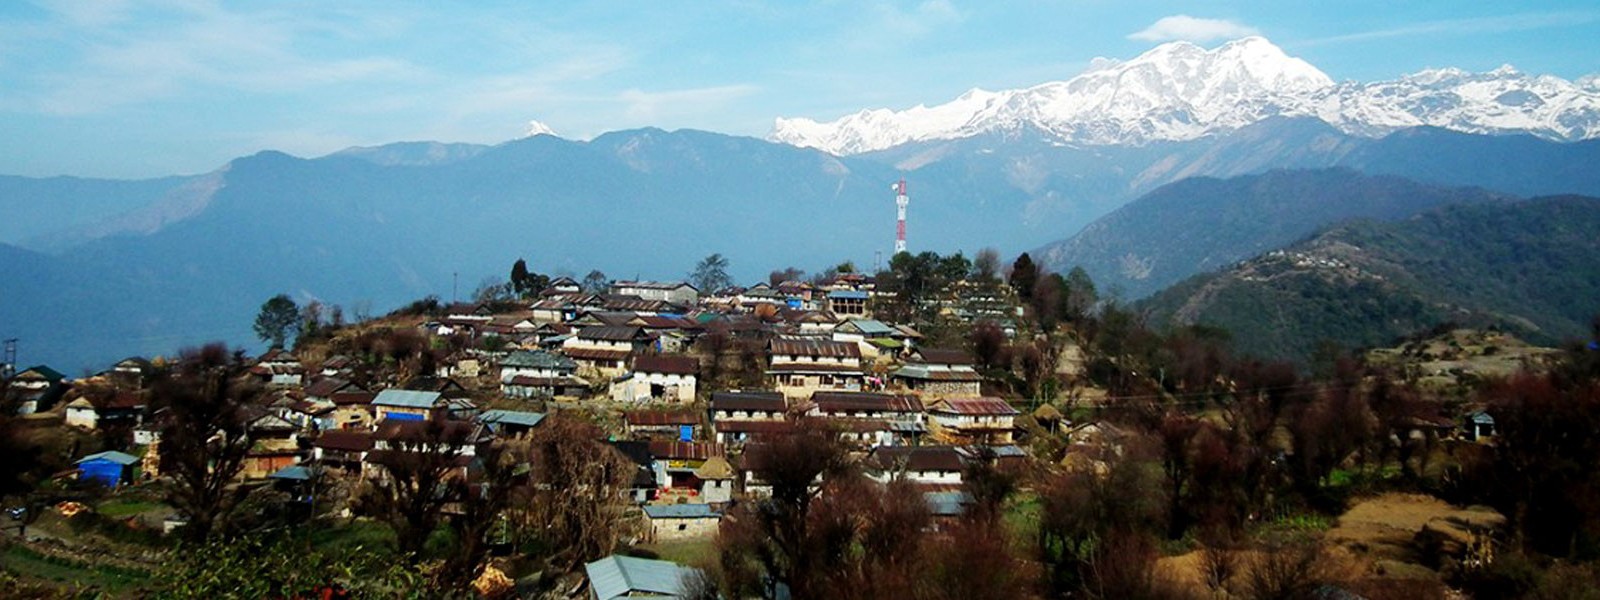 Nepal Tour and Sirubari Trek